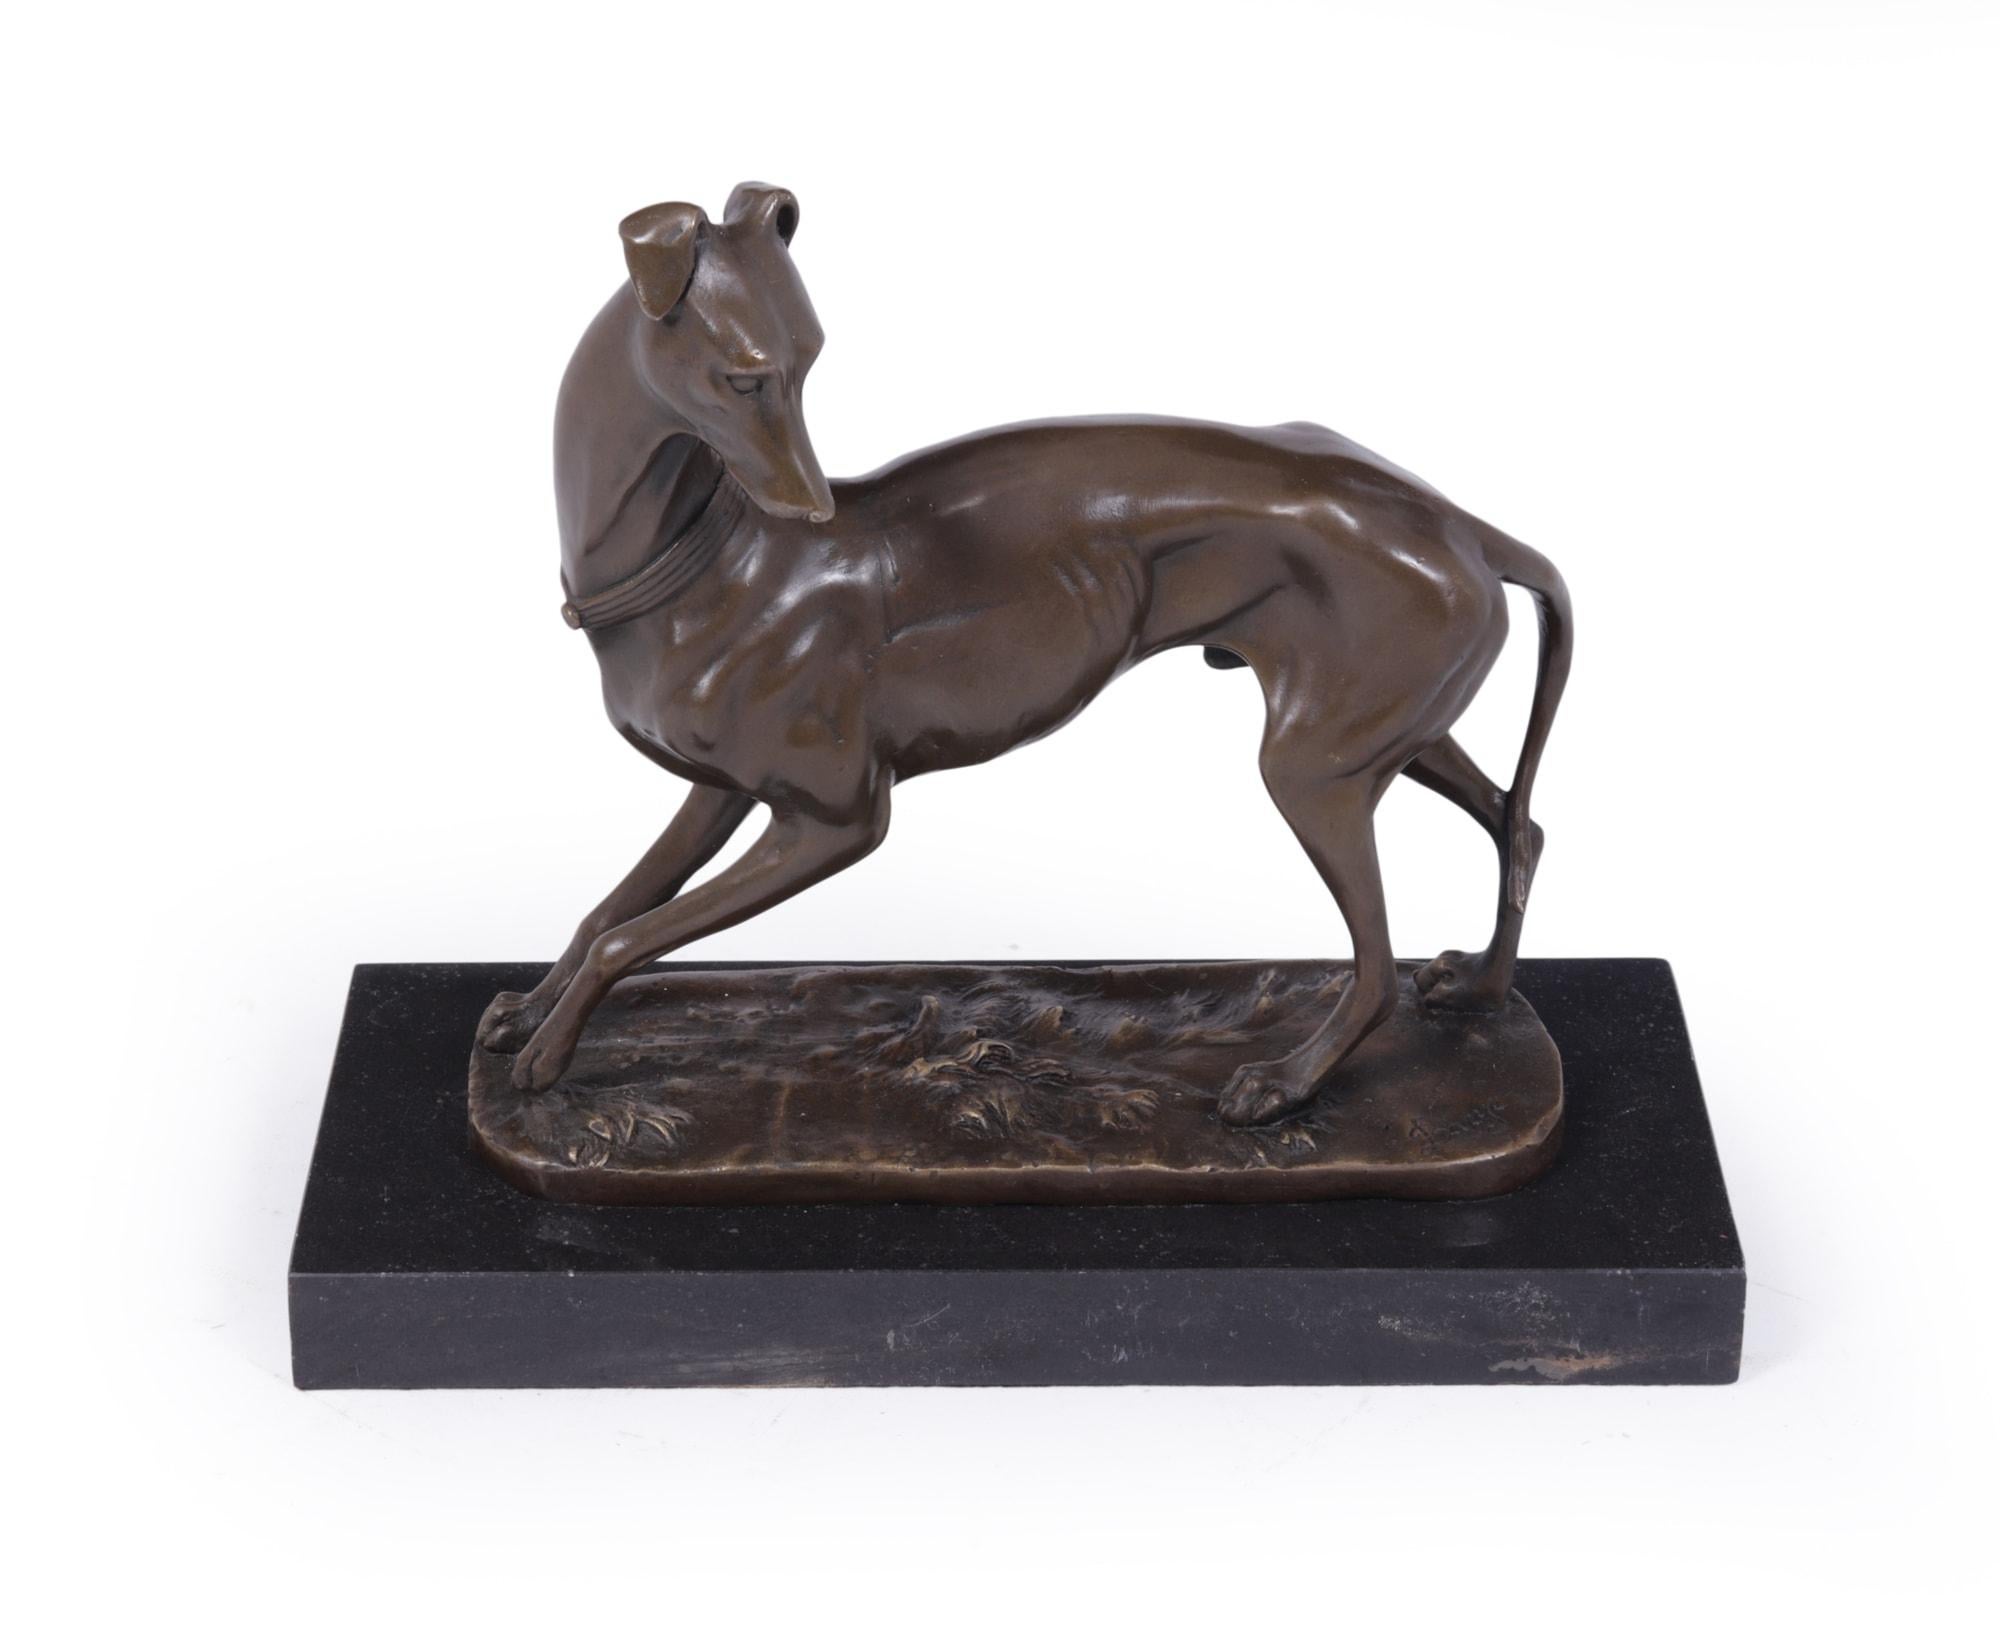 Sculpture Art Déco de Whippet en bronze par Bayre
Antoine-Louis Bayre ( 1795- 1875 ) Le Whippet, ce bronze a été coulé vers 1880 et signé Bayre monté sur une base en marbre noir, coulage de grande qualité, couleur et patine du bronze. Bayre est né